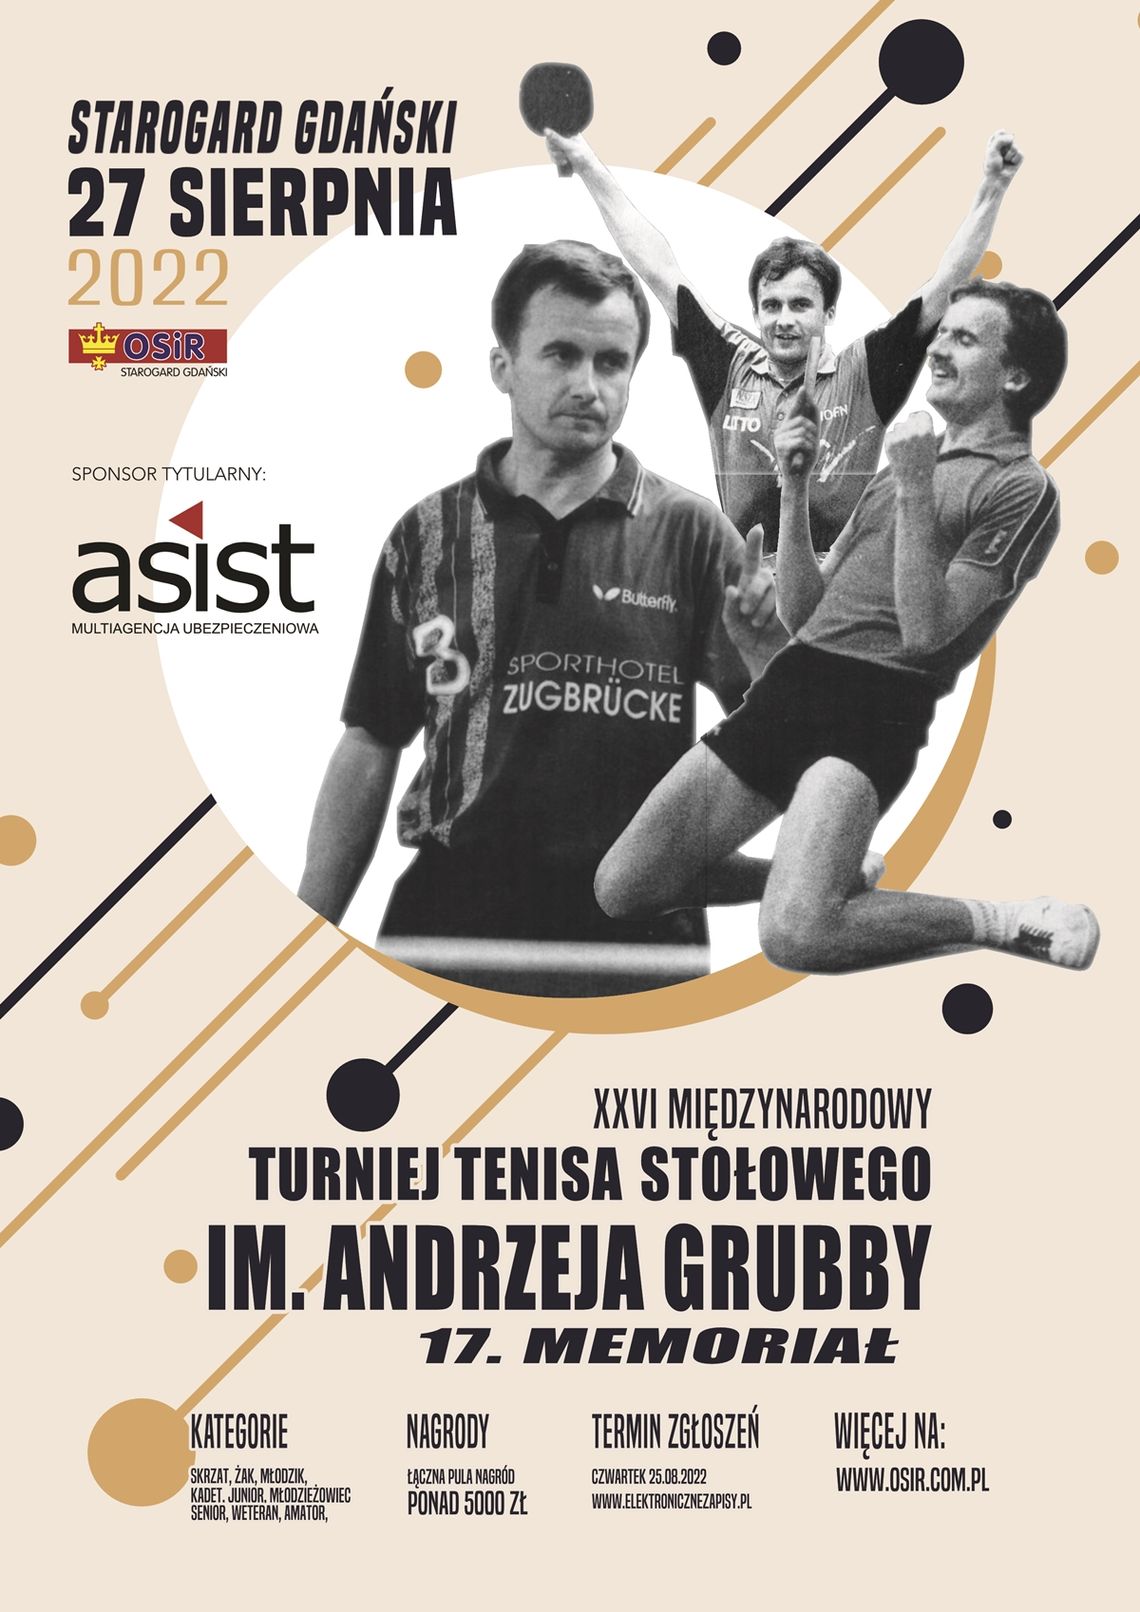 XXVI Międzynarodowy Turniej Tenisa Stołowego im. Andrzeja Grubby. 17. MEMORIAŁ